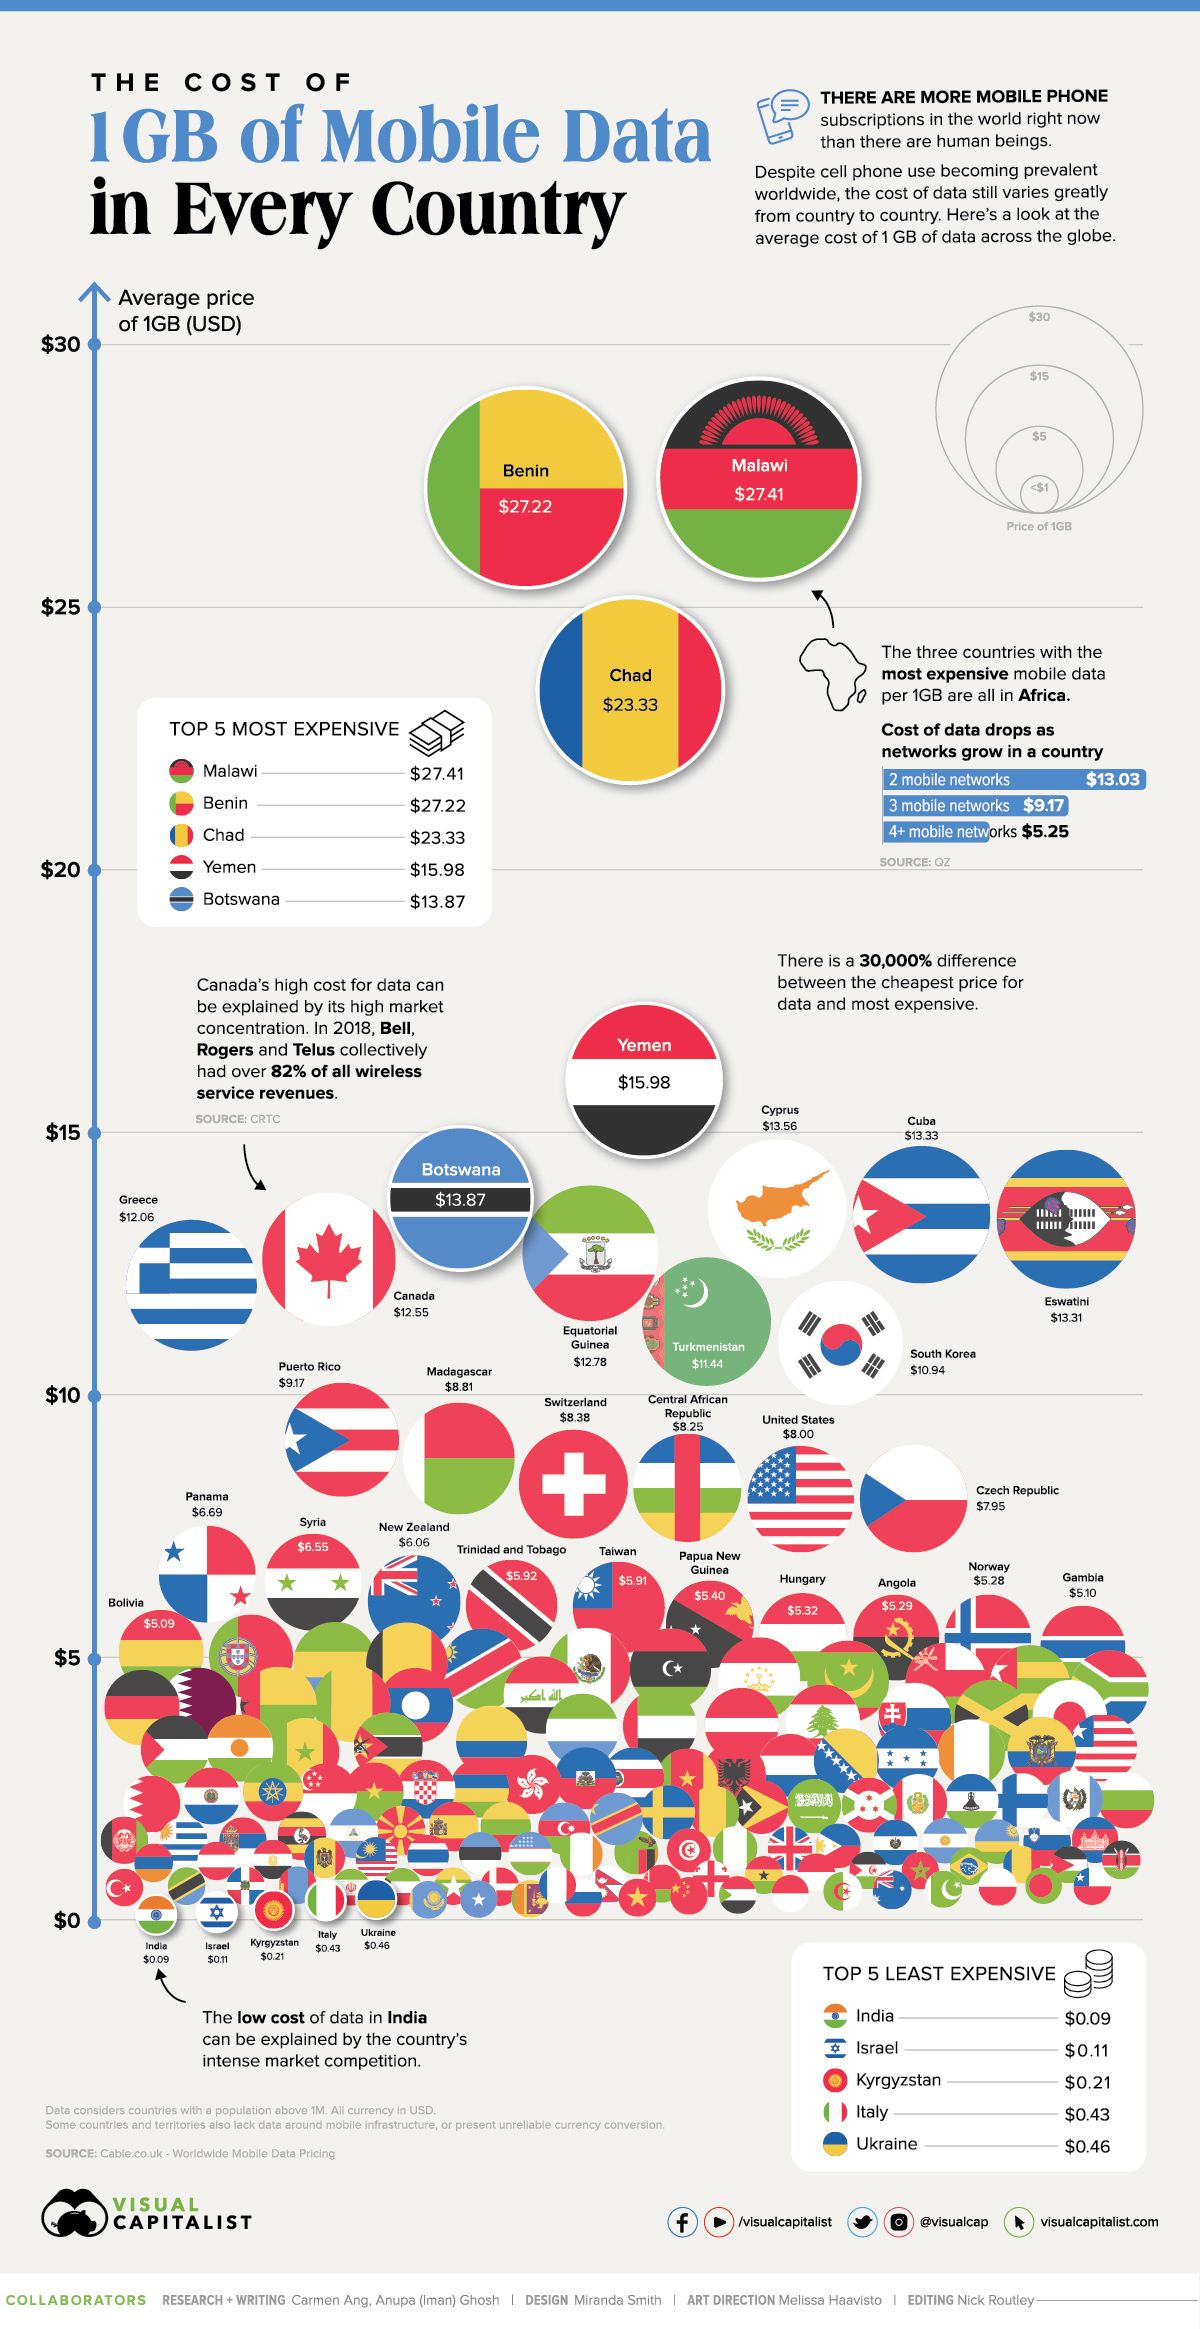 Chi phí dữ liệu di động ở mỗi quốc gia infographic